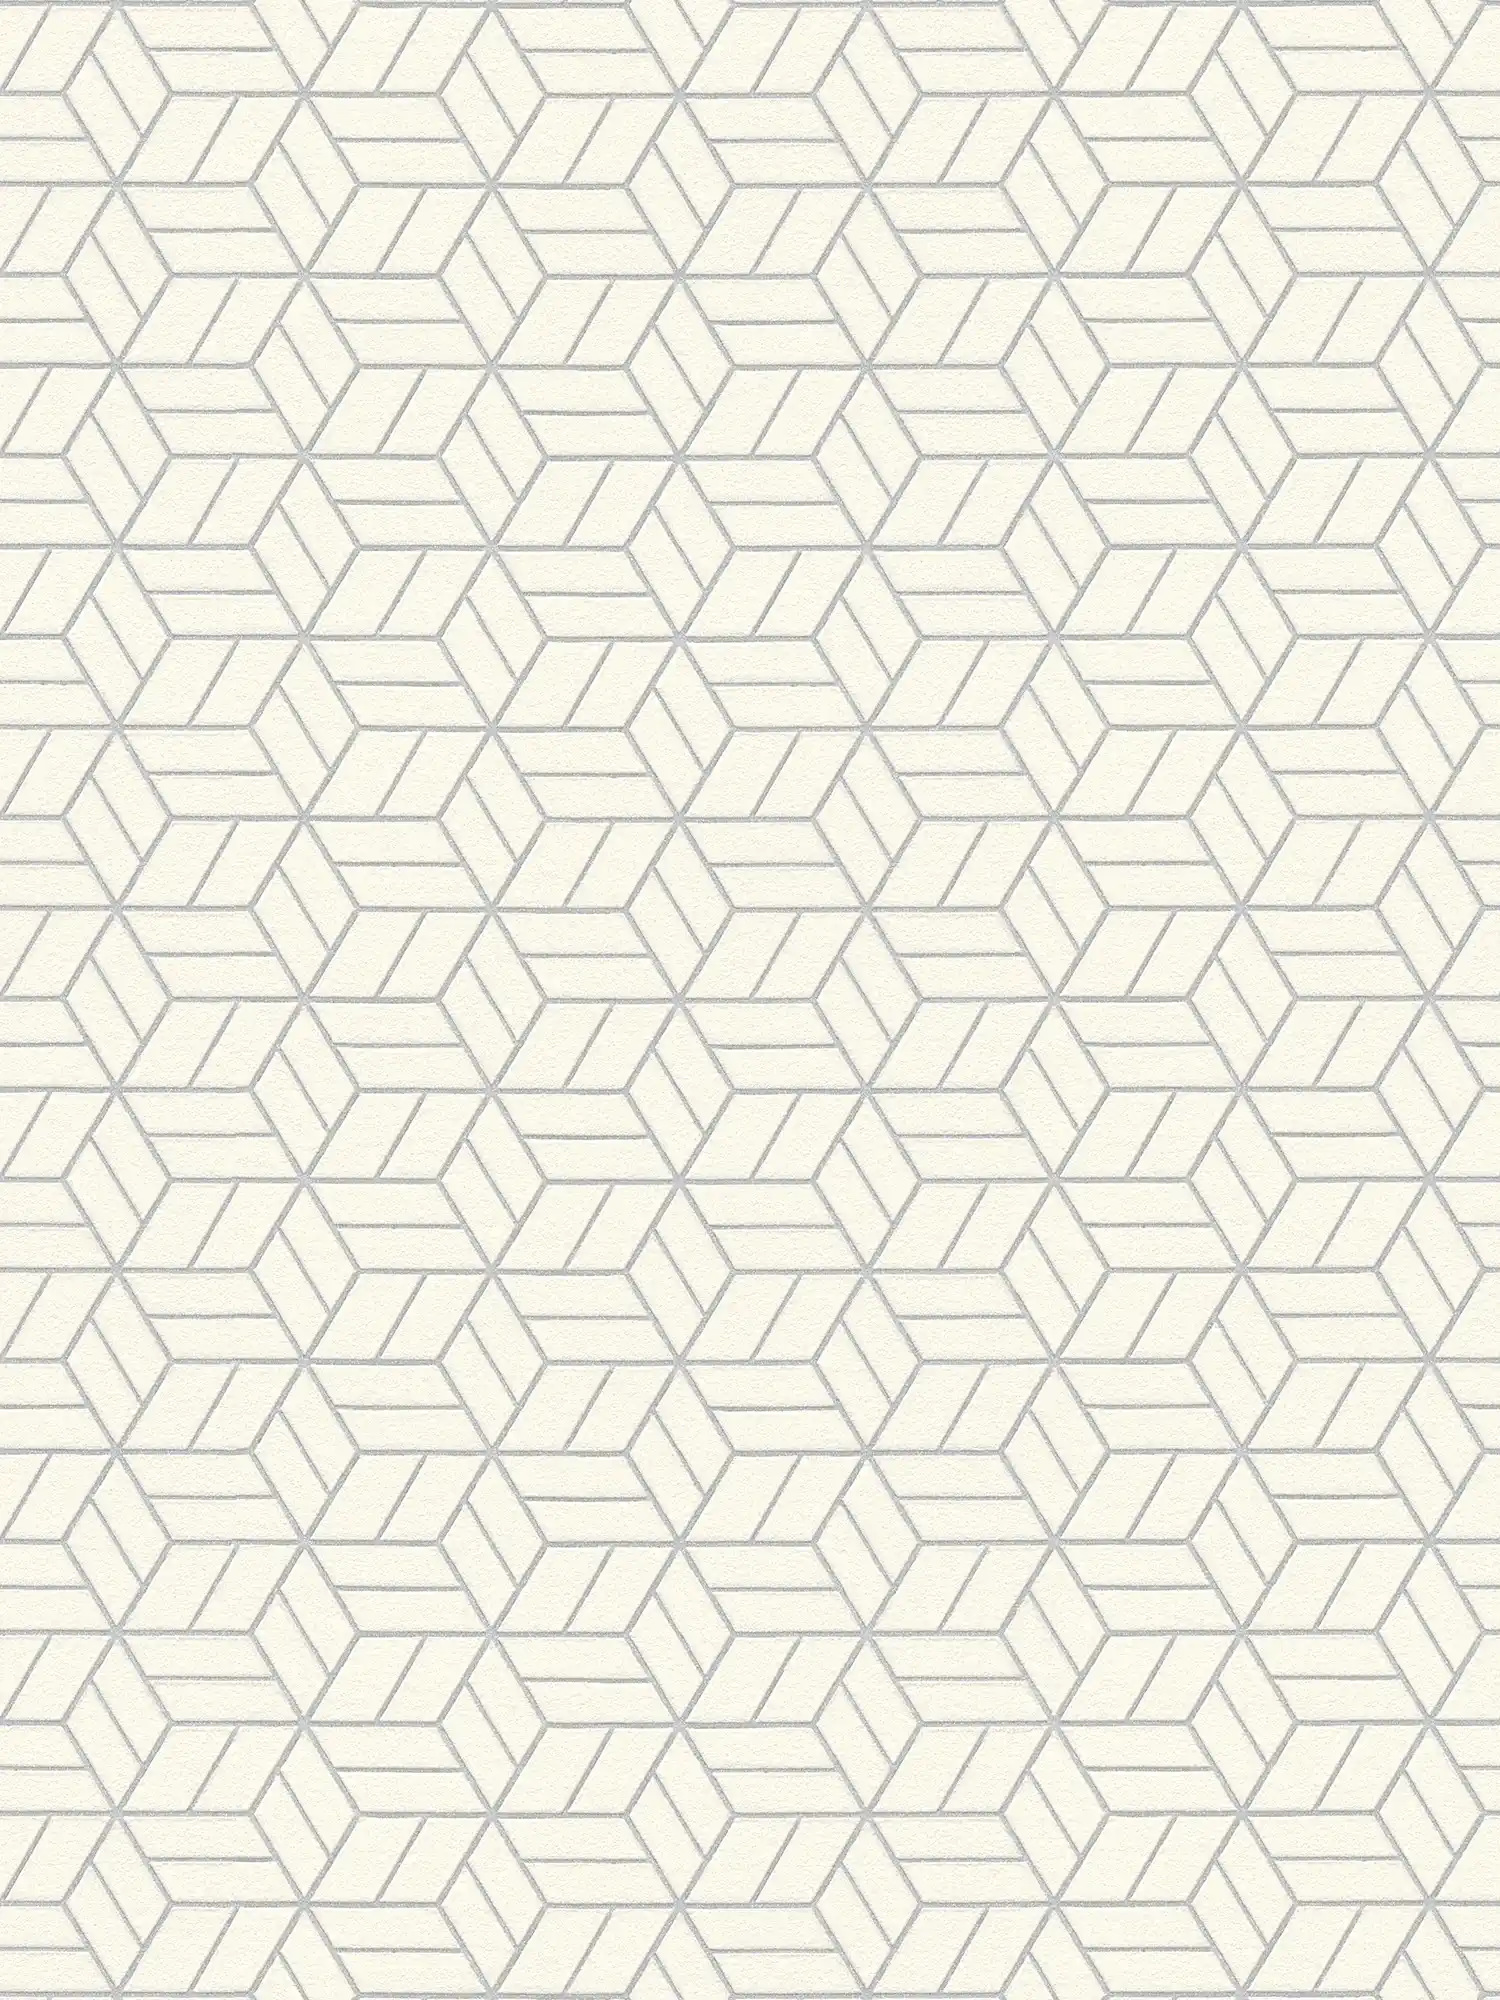 Papier peint motif géométrique & effet scintillant - argent, gris, blanc
